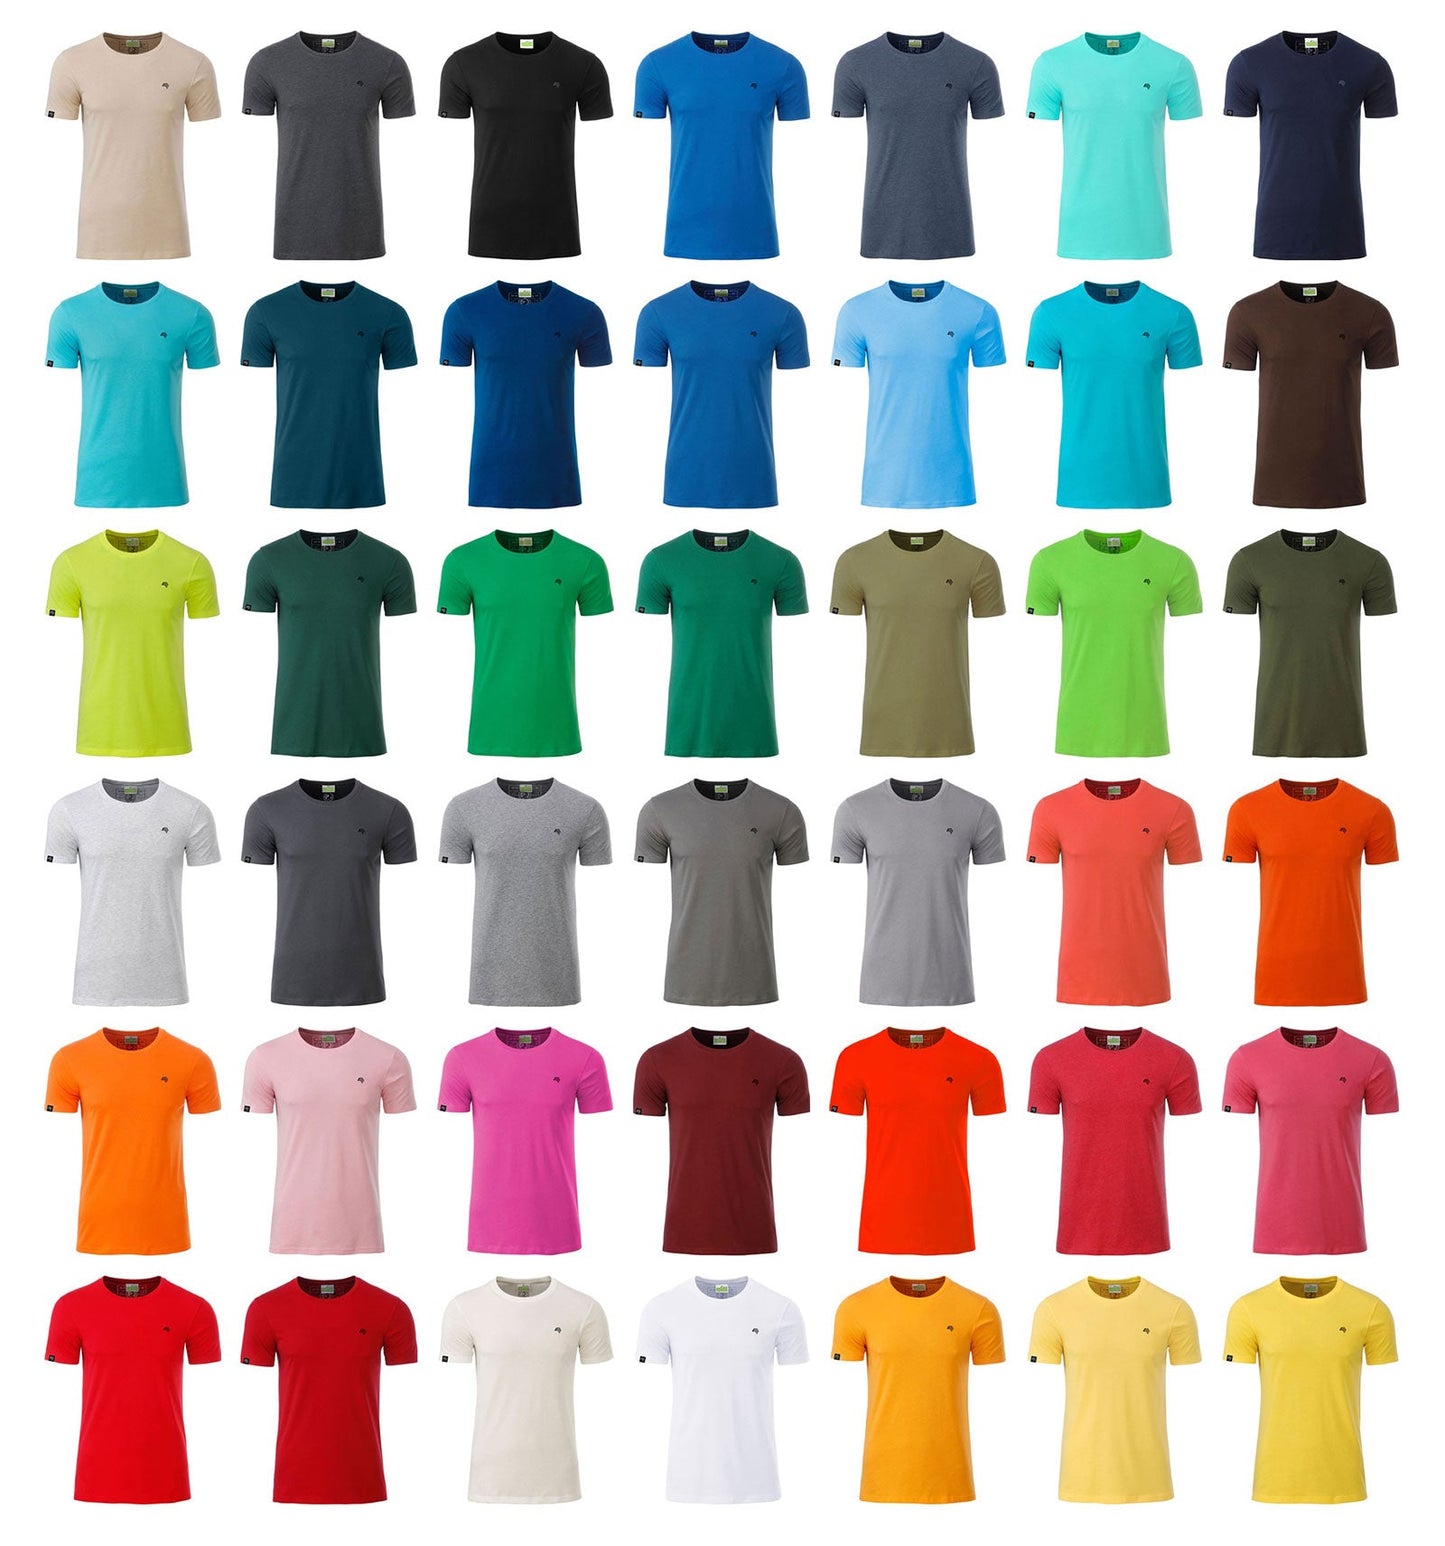 JAN 8008 ― Herren Bio-Baumwolle T-Shirt - Natural Weiß